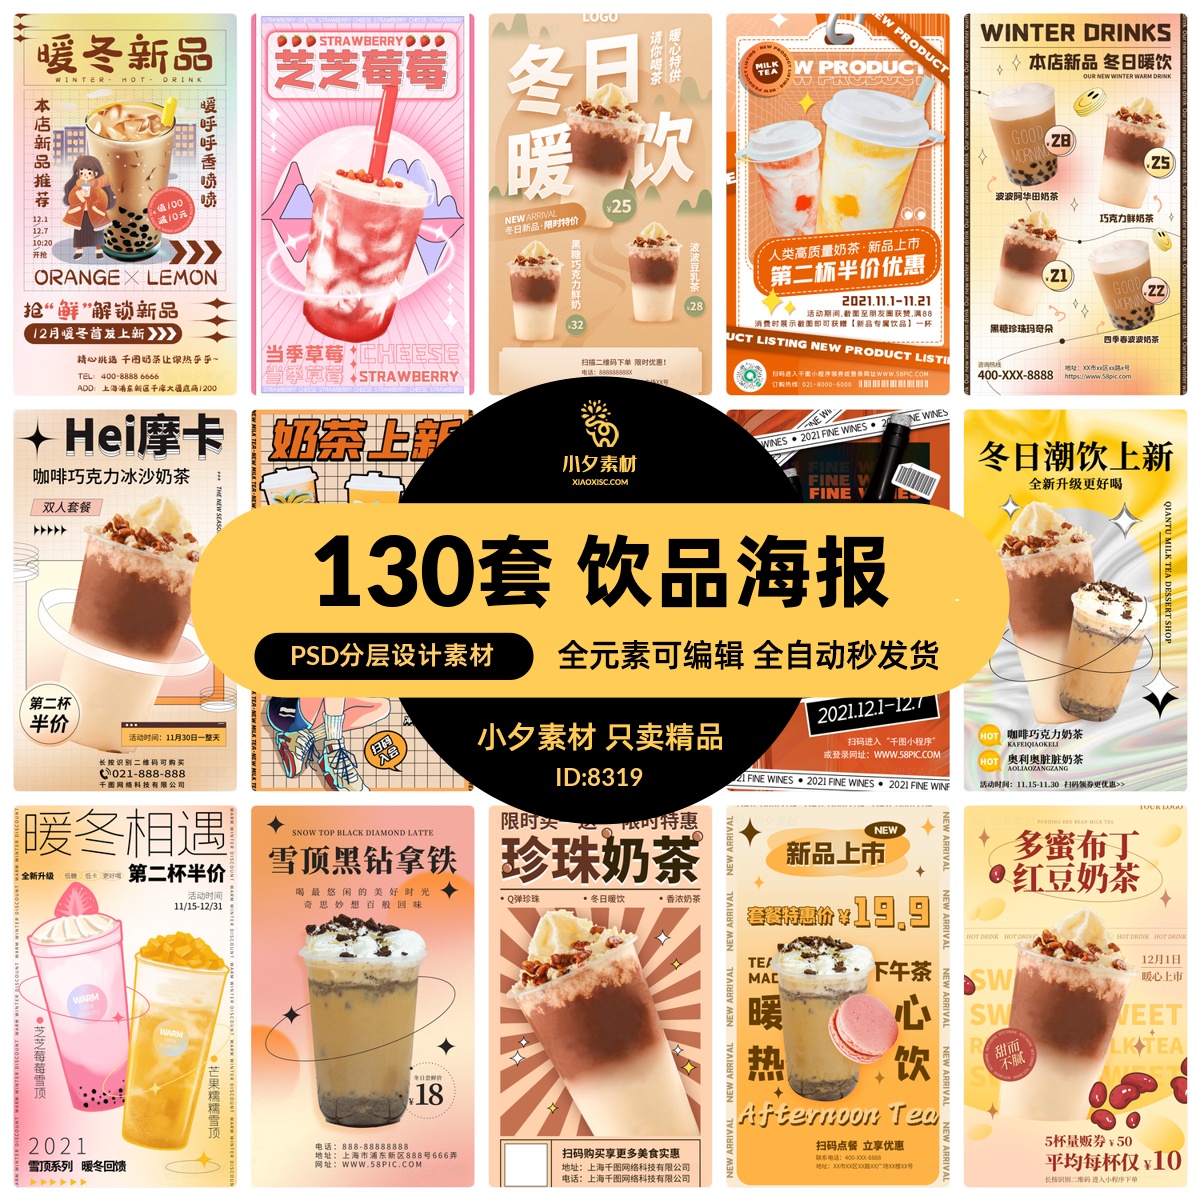 暖冬奶茶饮料饮品店新品上市宣传促销手机海报模板PSD设计素材